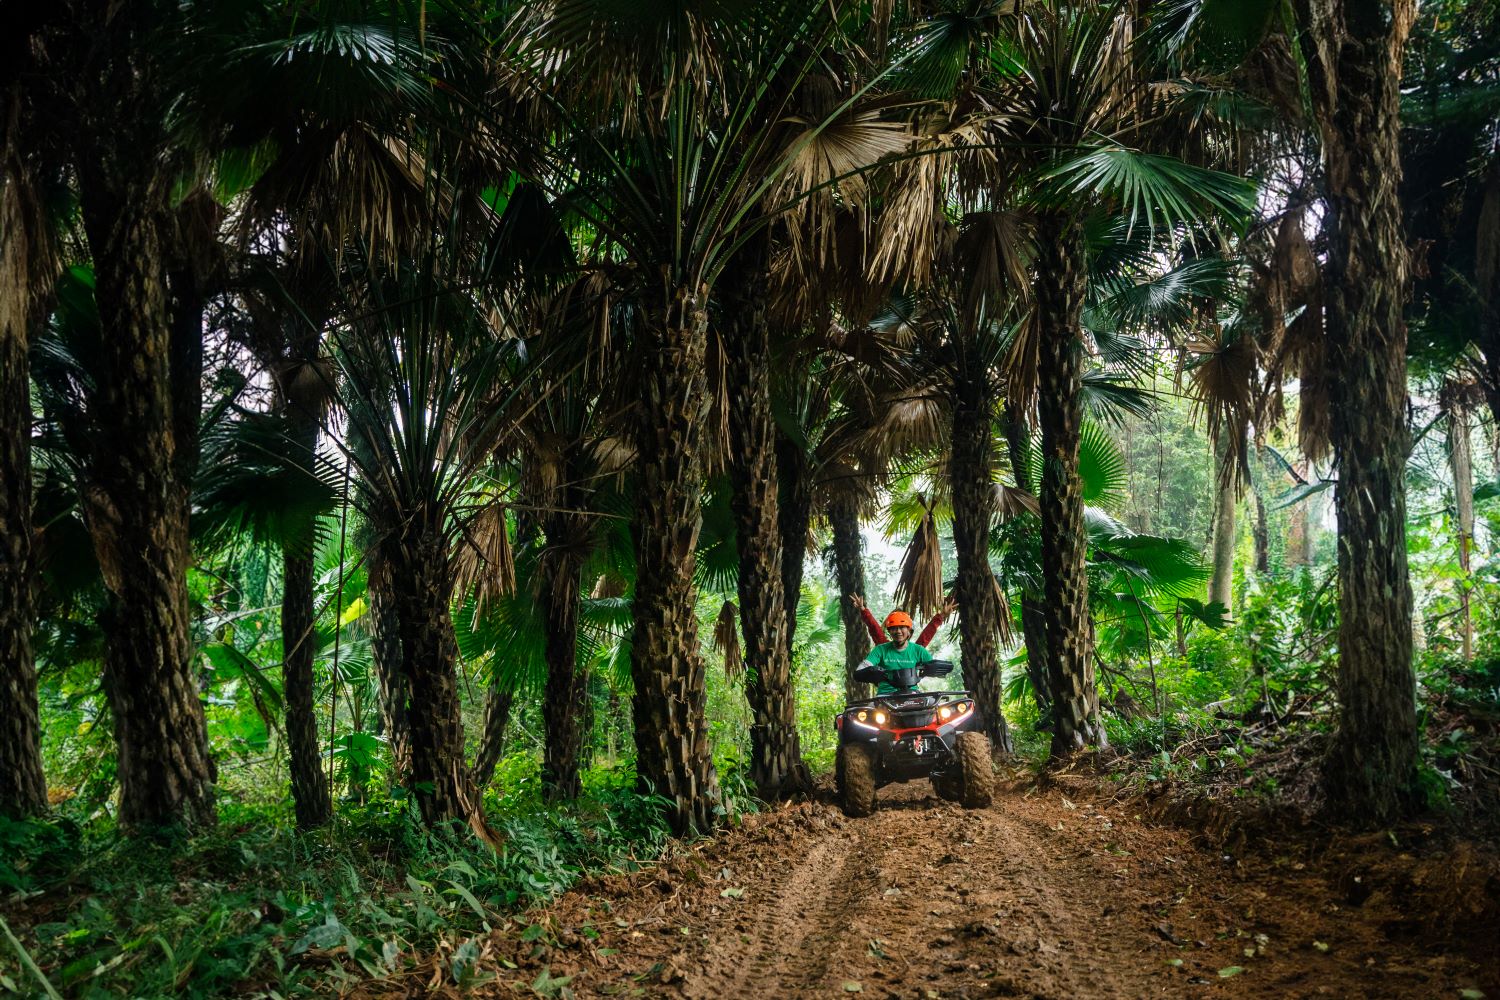 Tận hưởng cảm giác thử thách và sảng khoái khi cầm tay lái xe ATV khám phá rừng Lim.